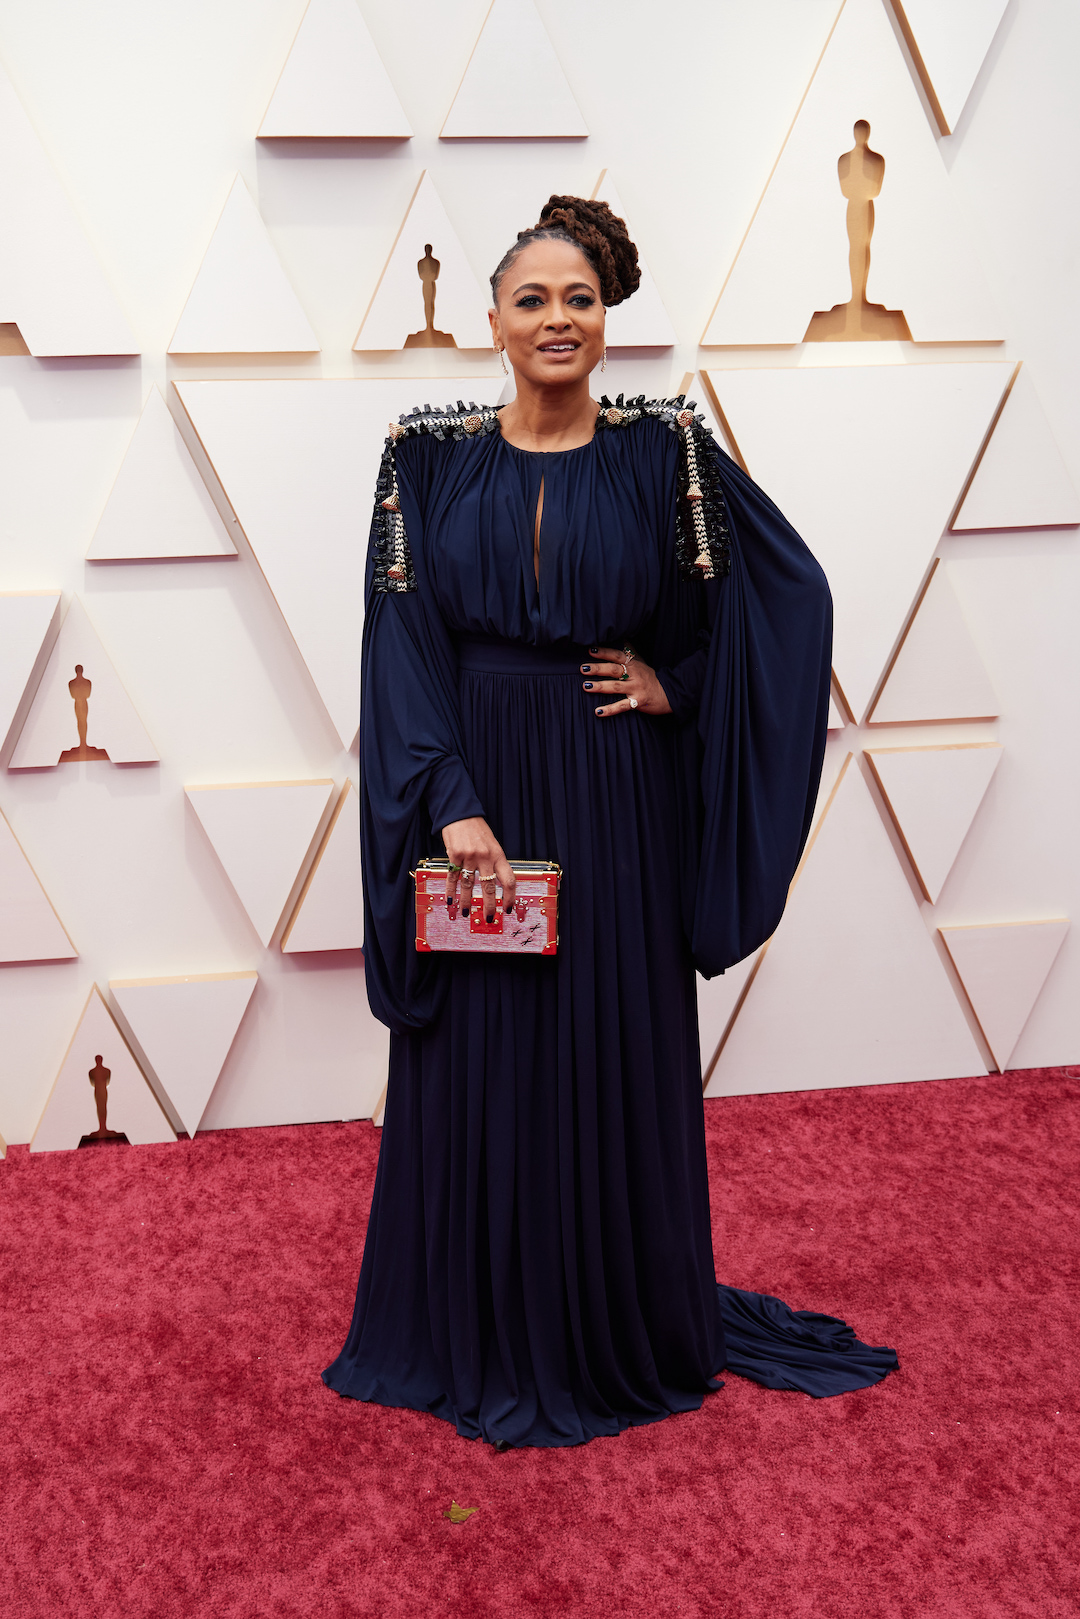 94th Oscars, Academy Awards 4Chion Lifestyle Ava DuVernay